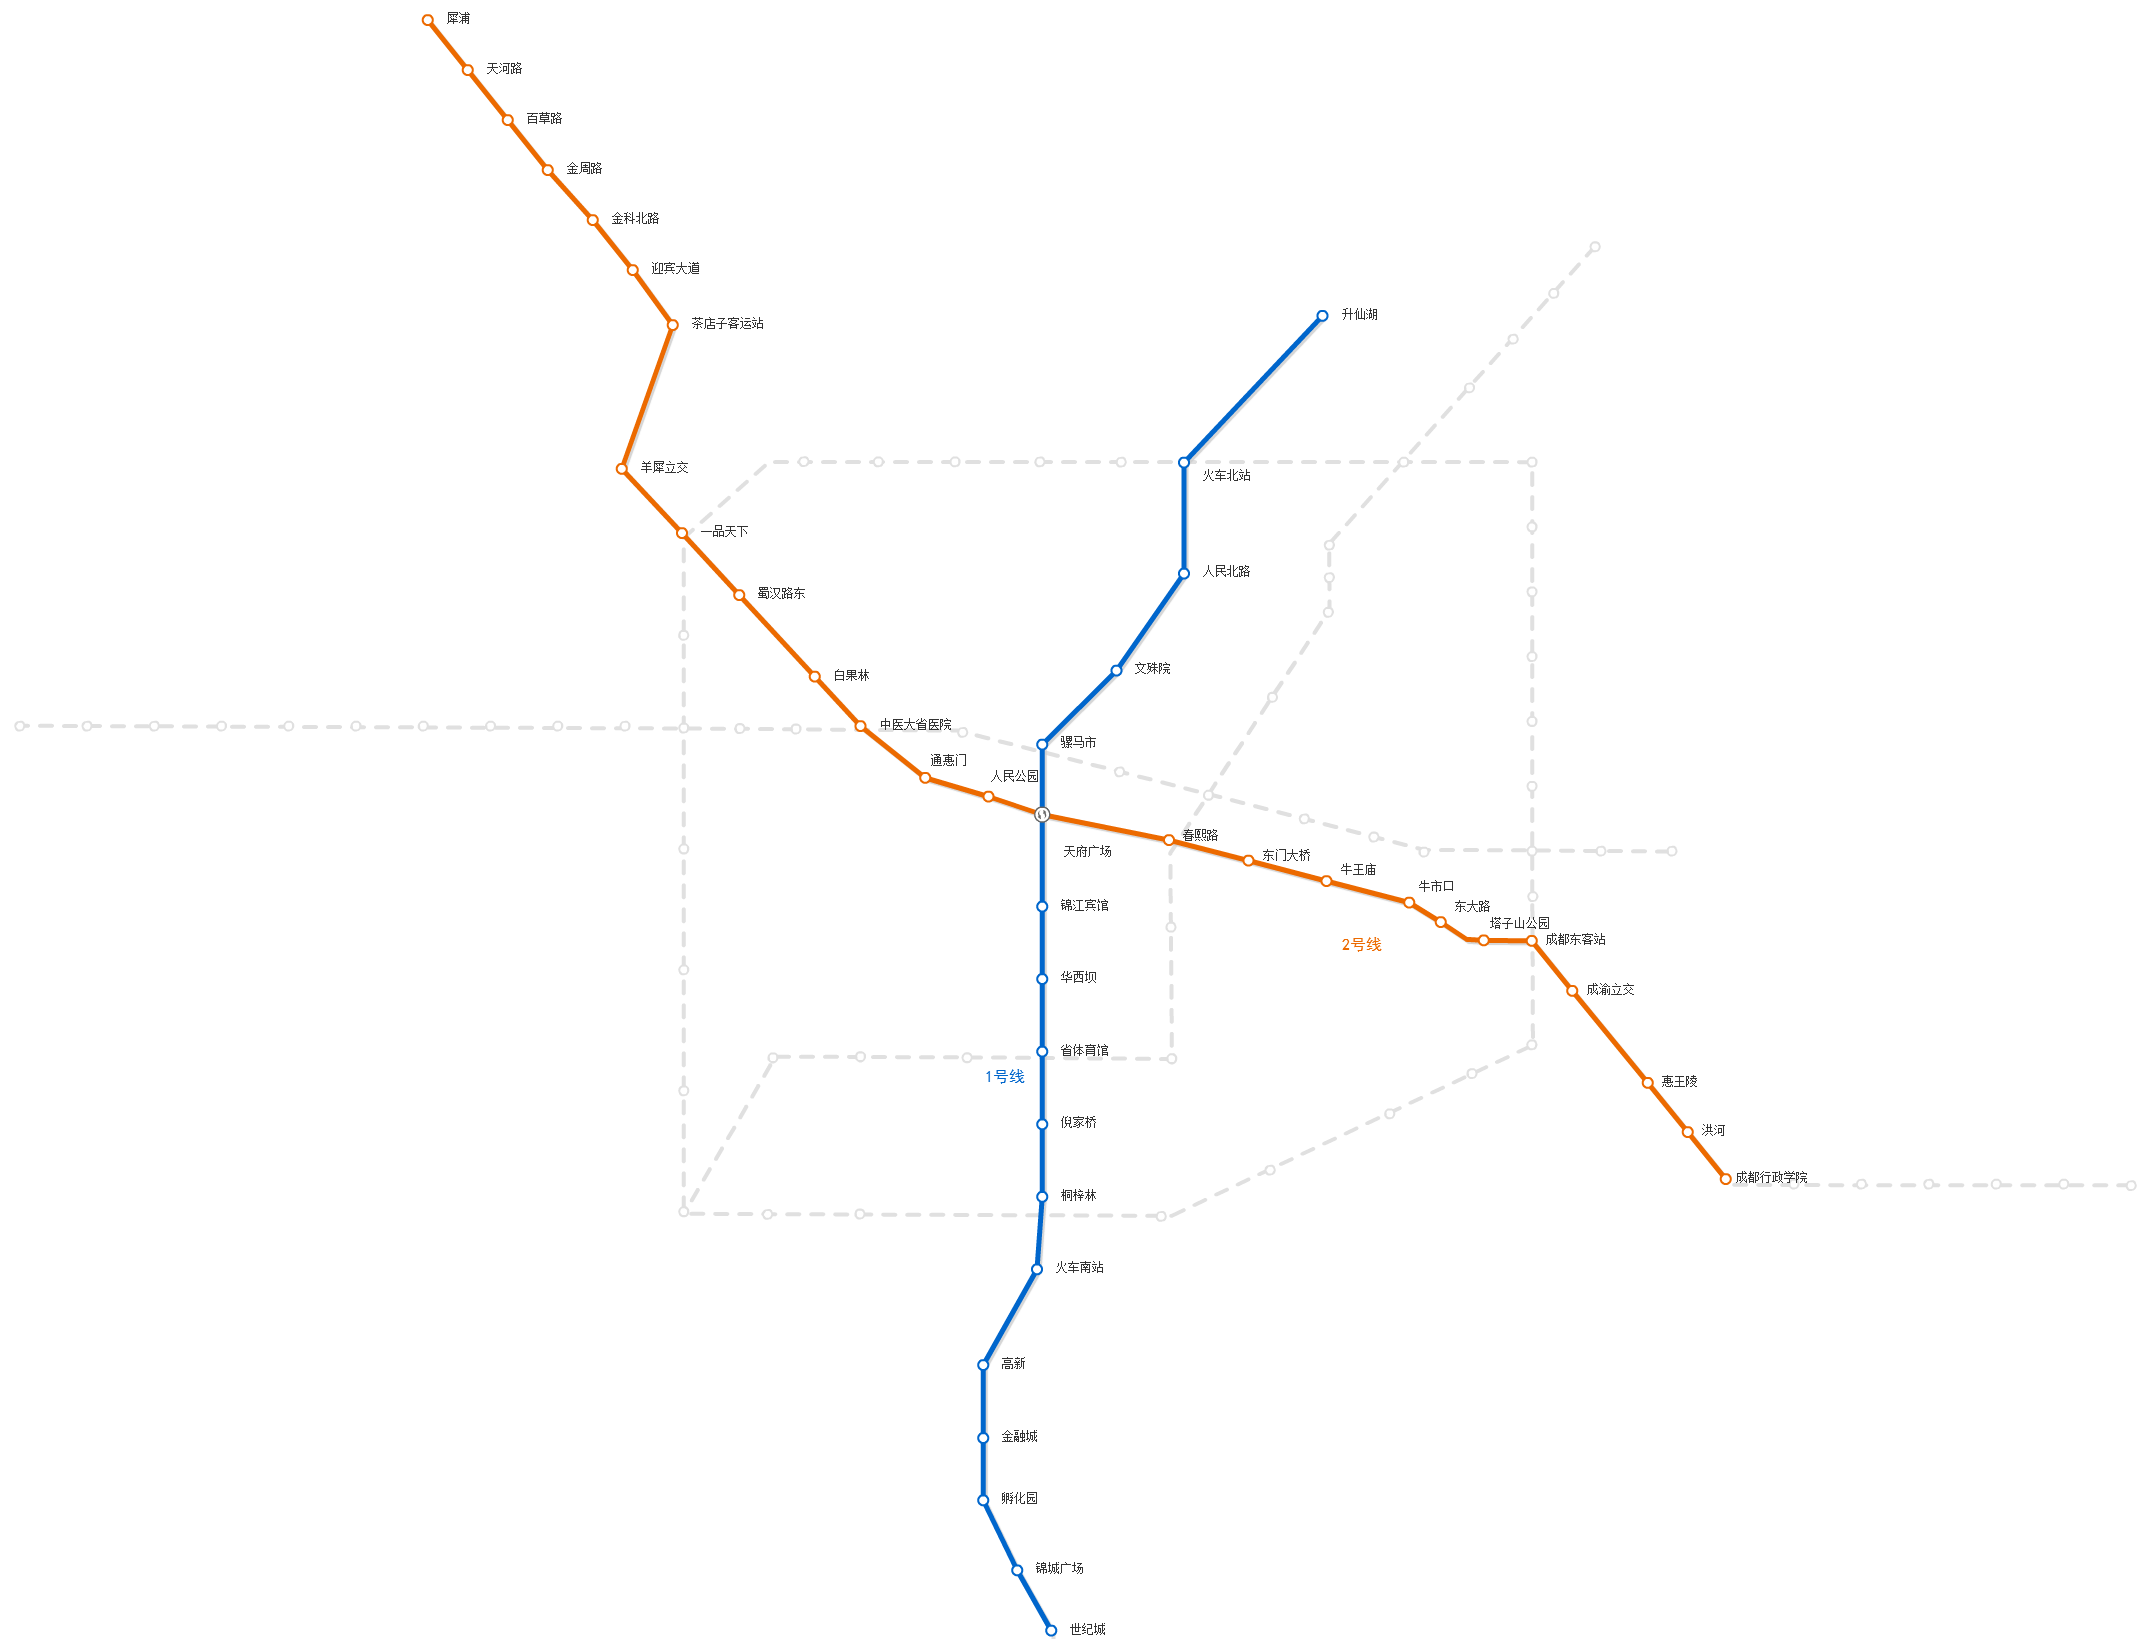 成都地铁线路图